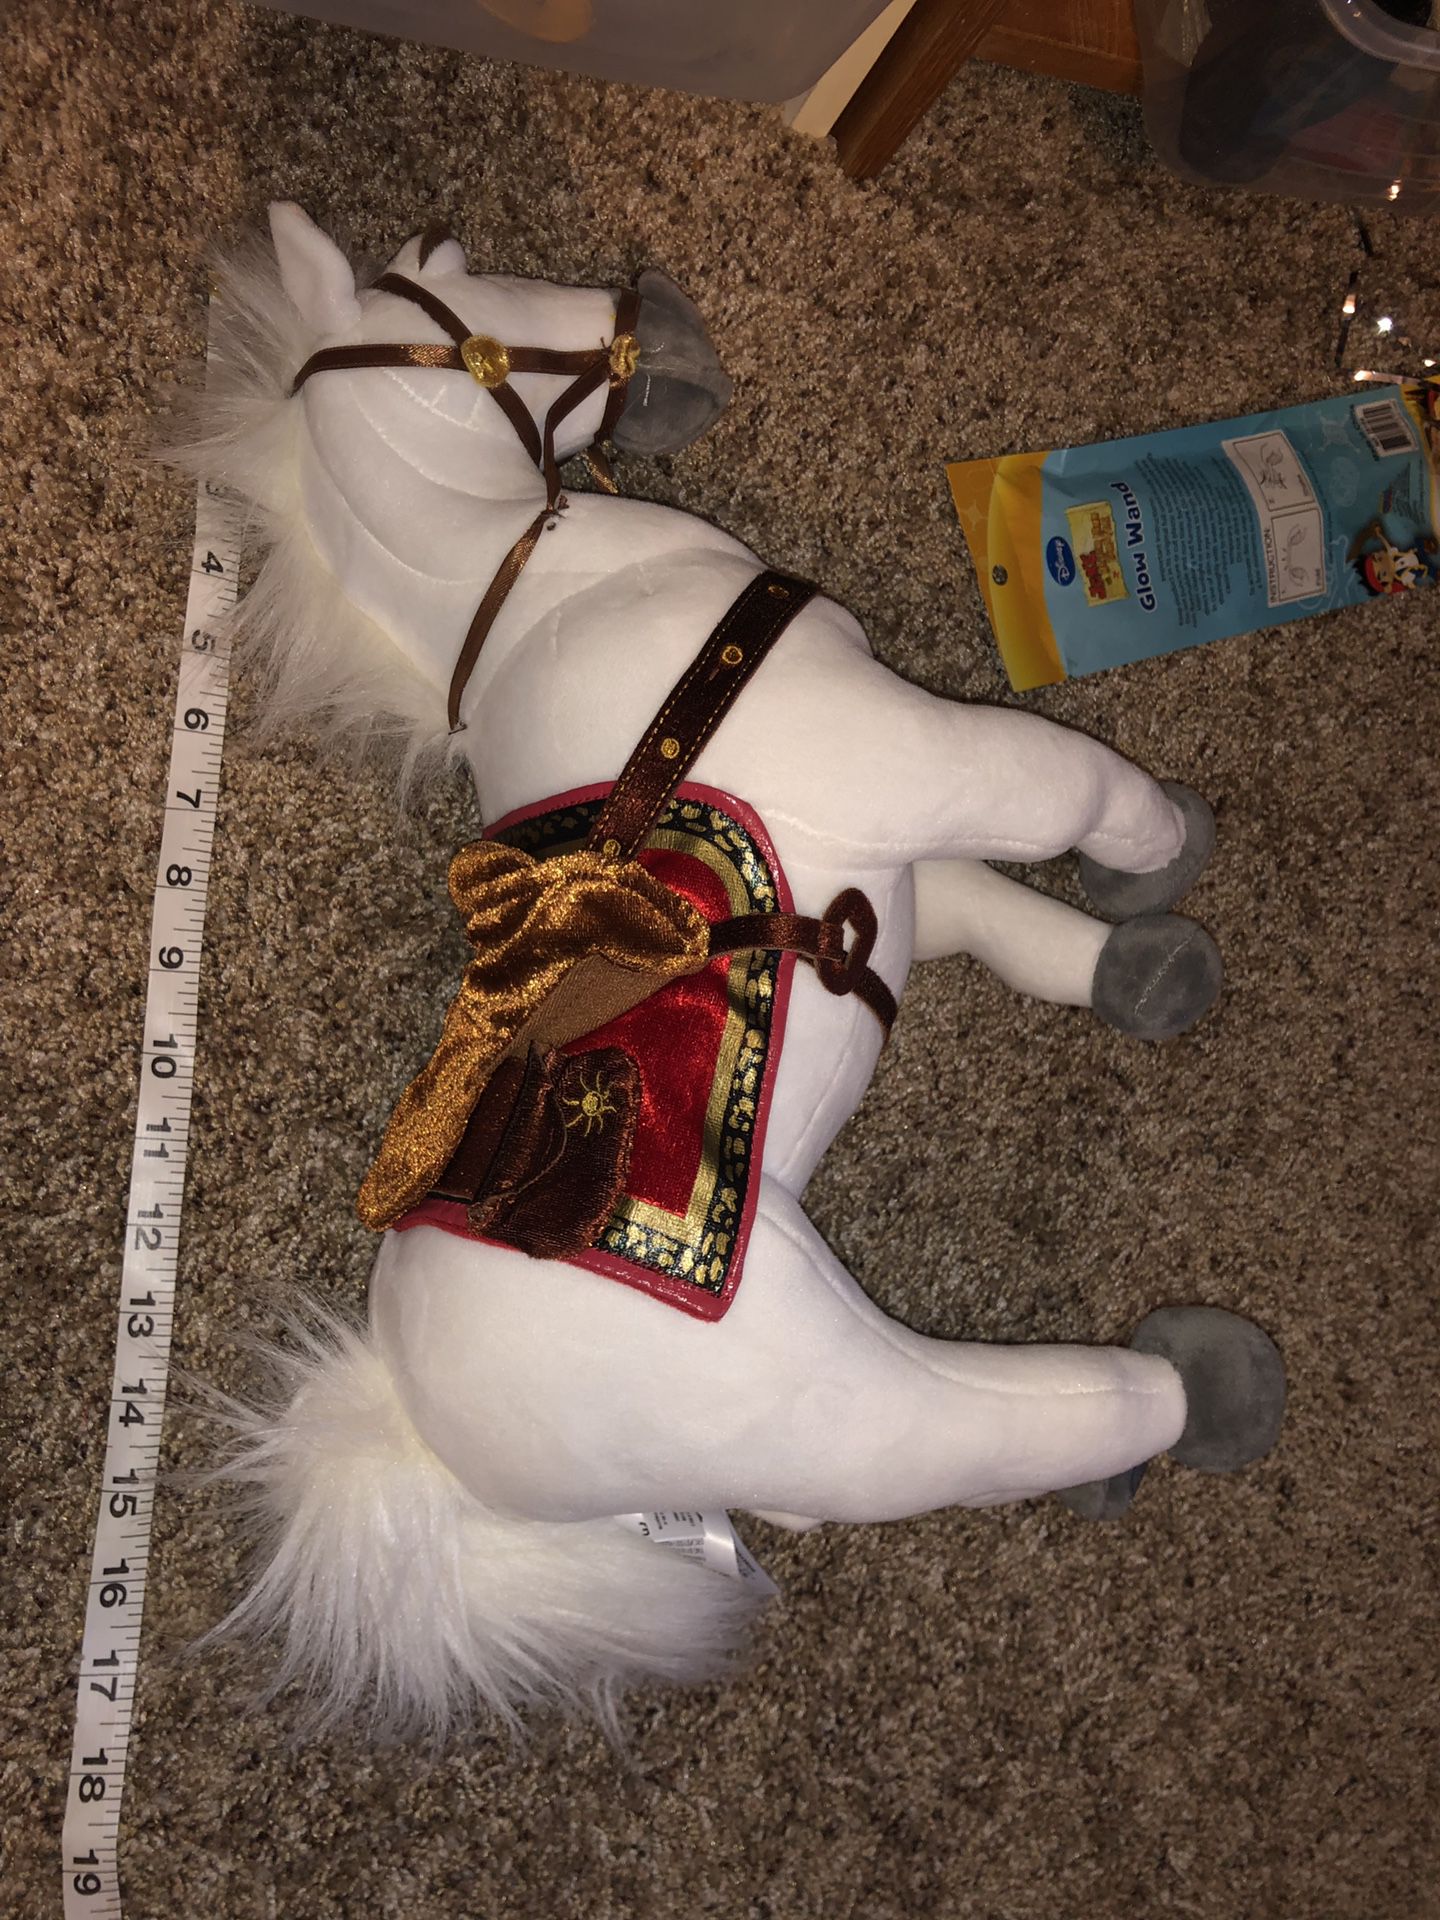 Tangled Maximus white horse plush doll (Disney Store) 17” long